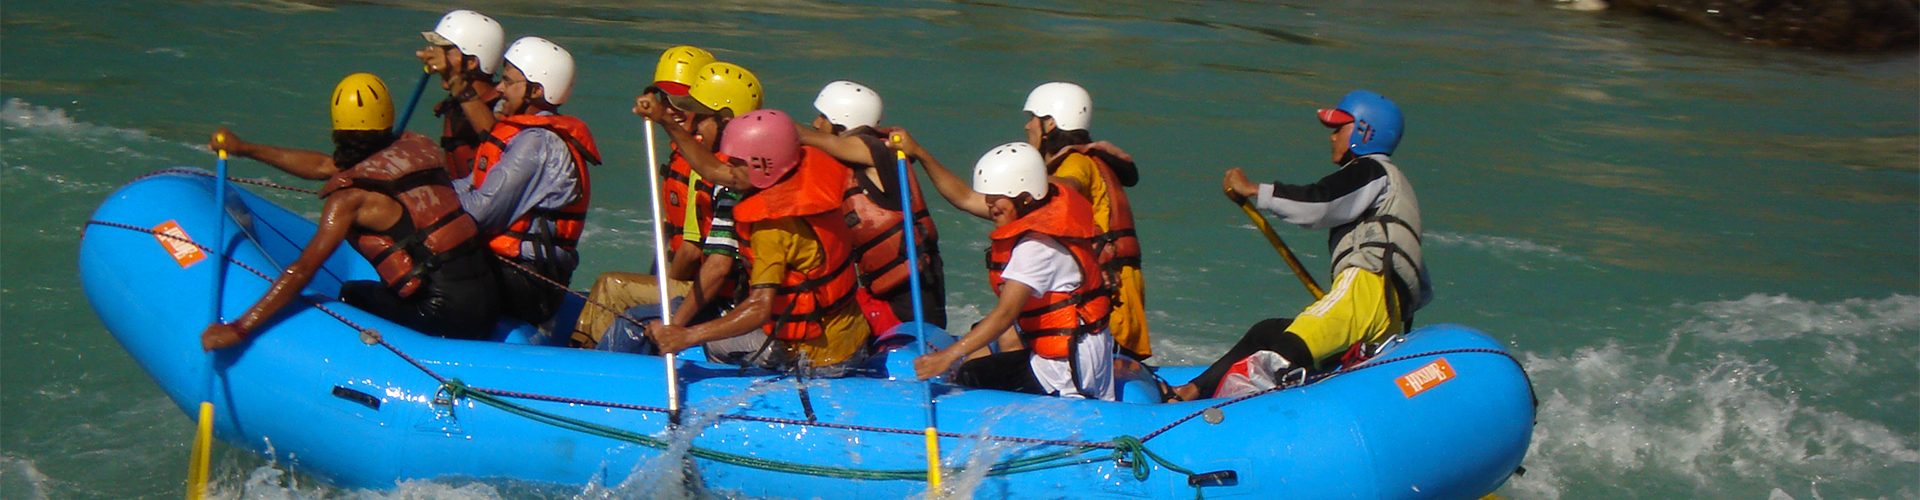 Karnali River Rafting